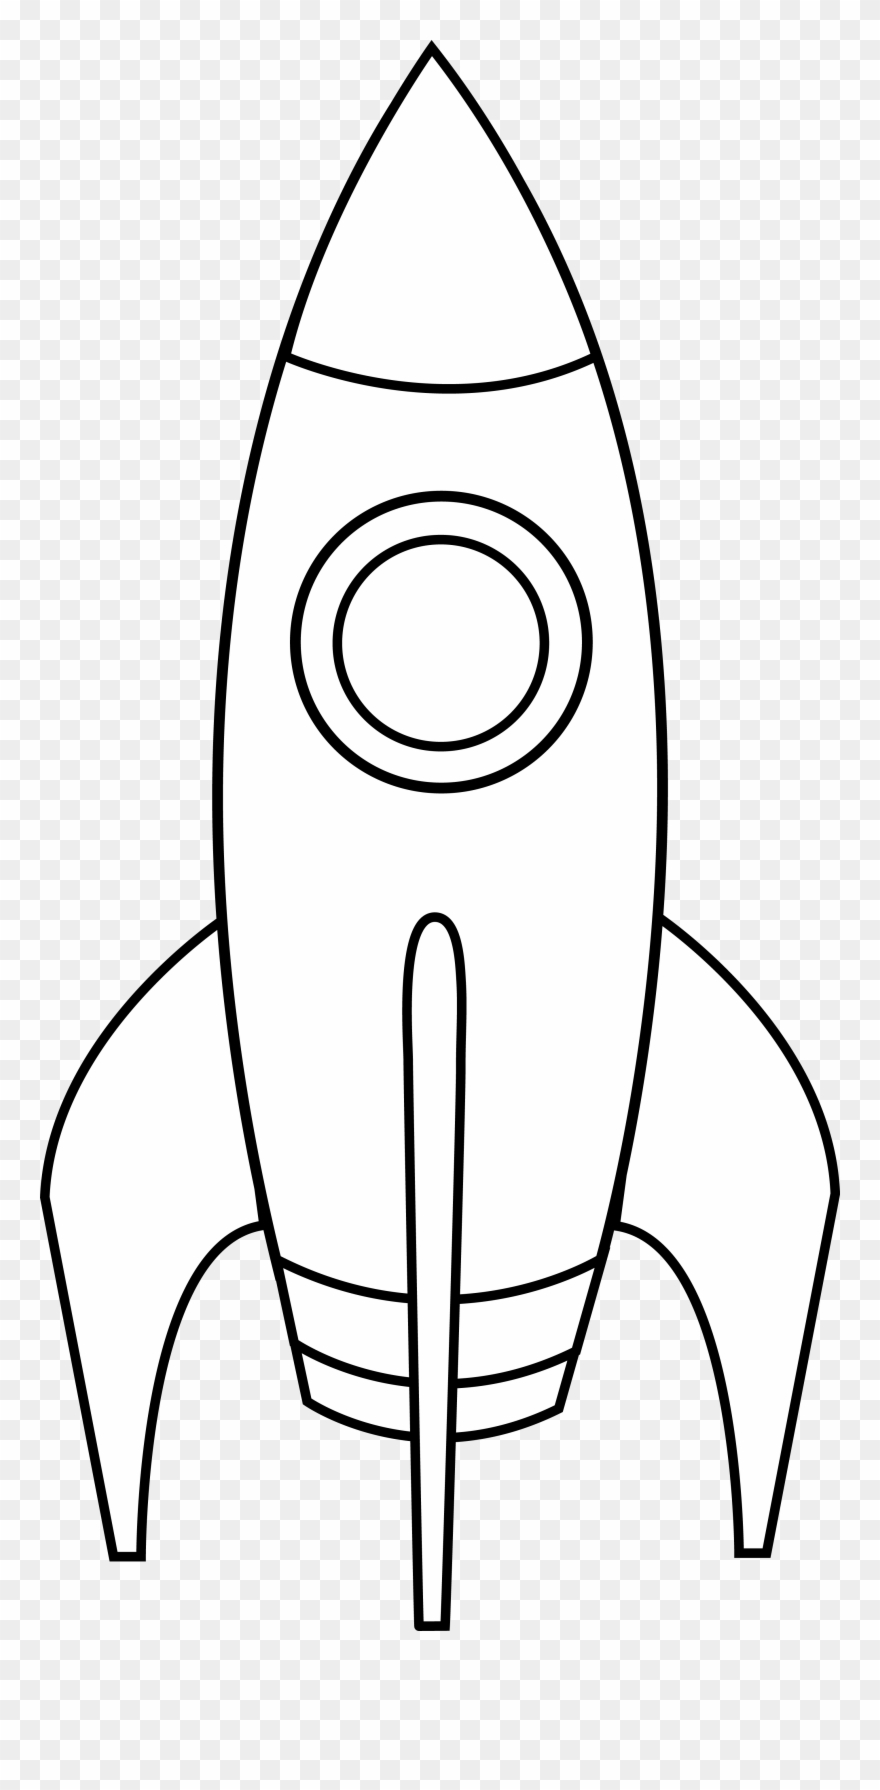 Rocketship clipart drawing. Rocket ship black and